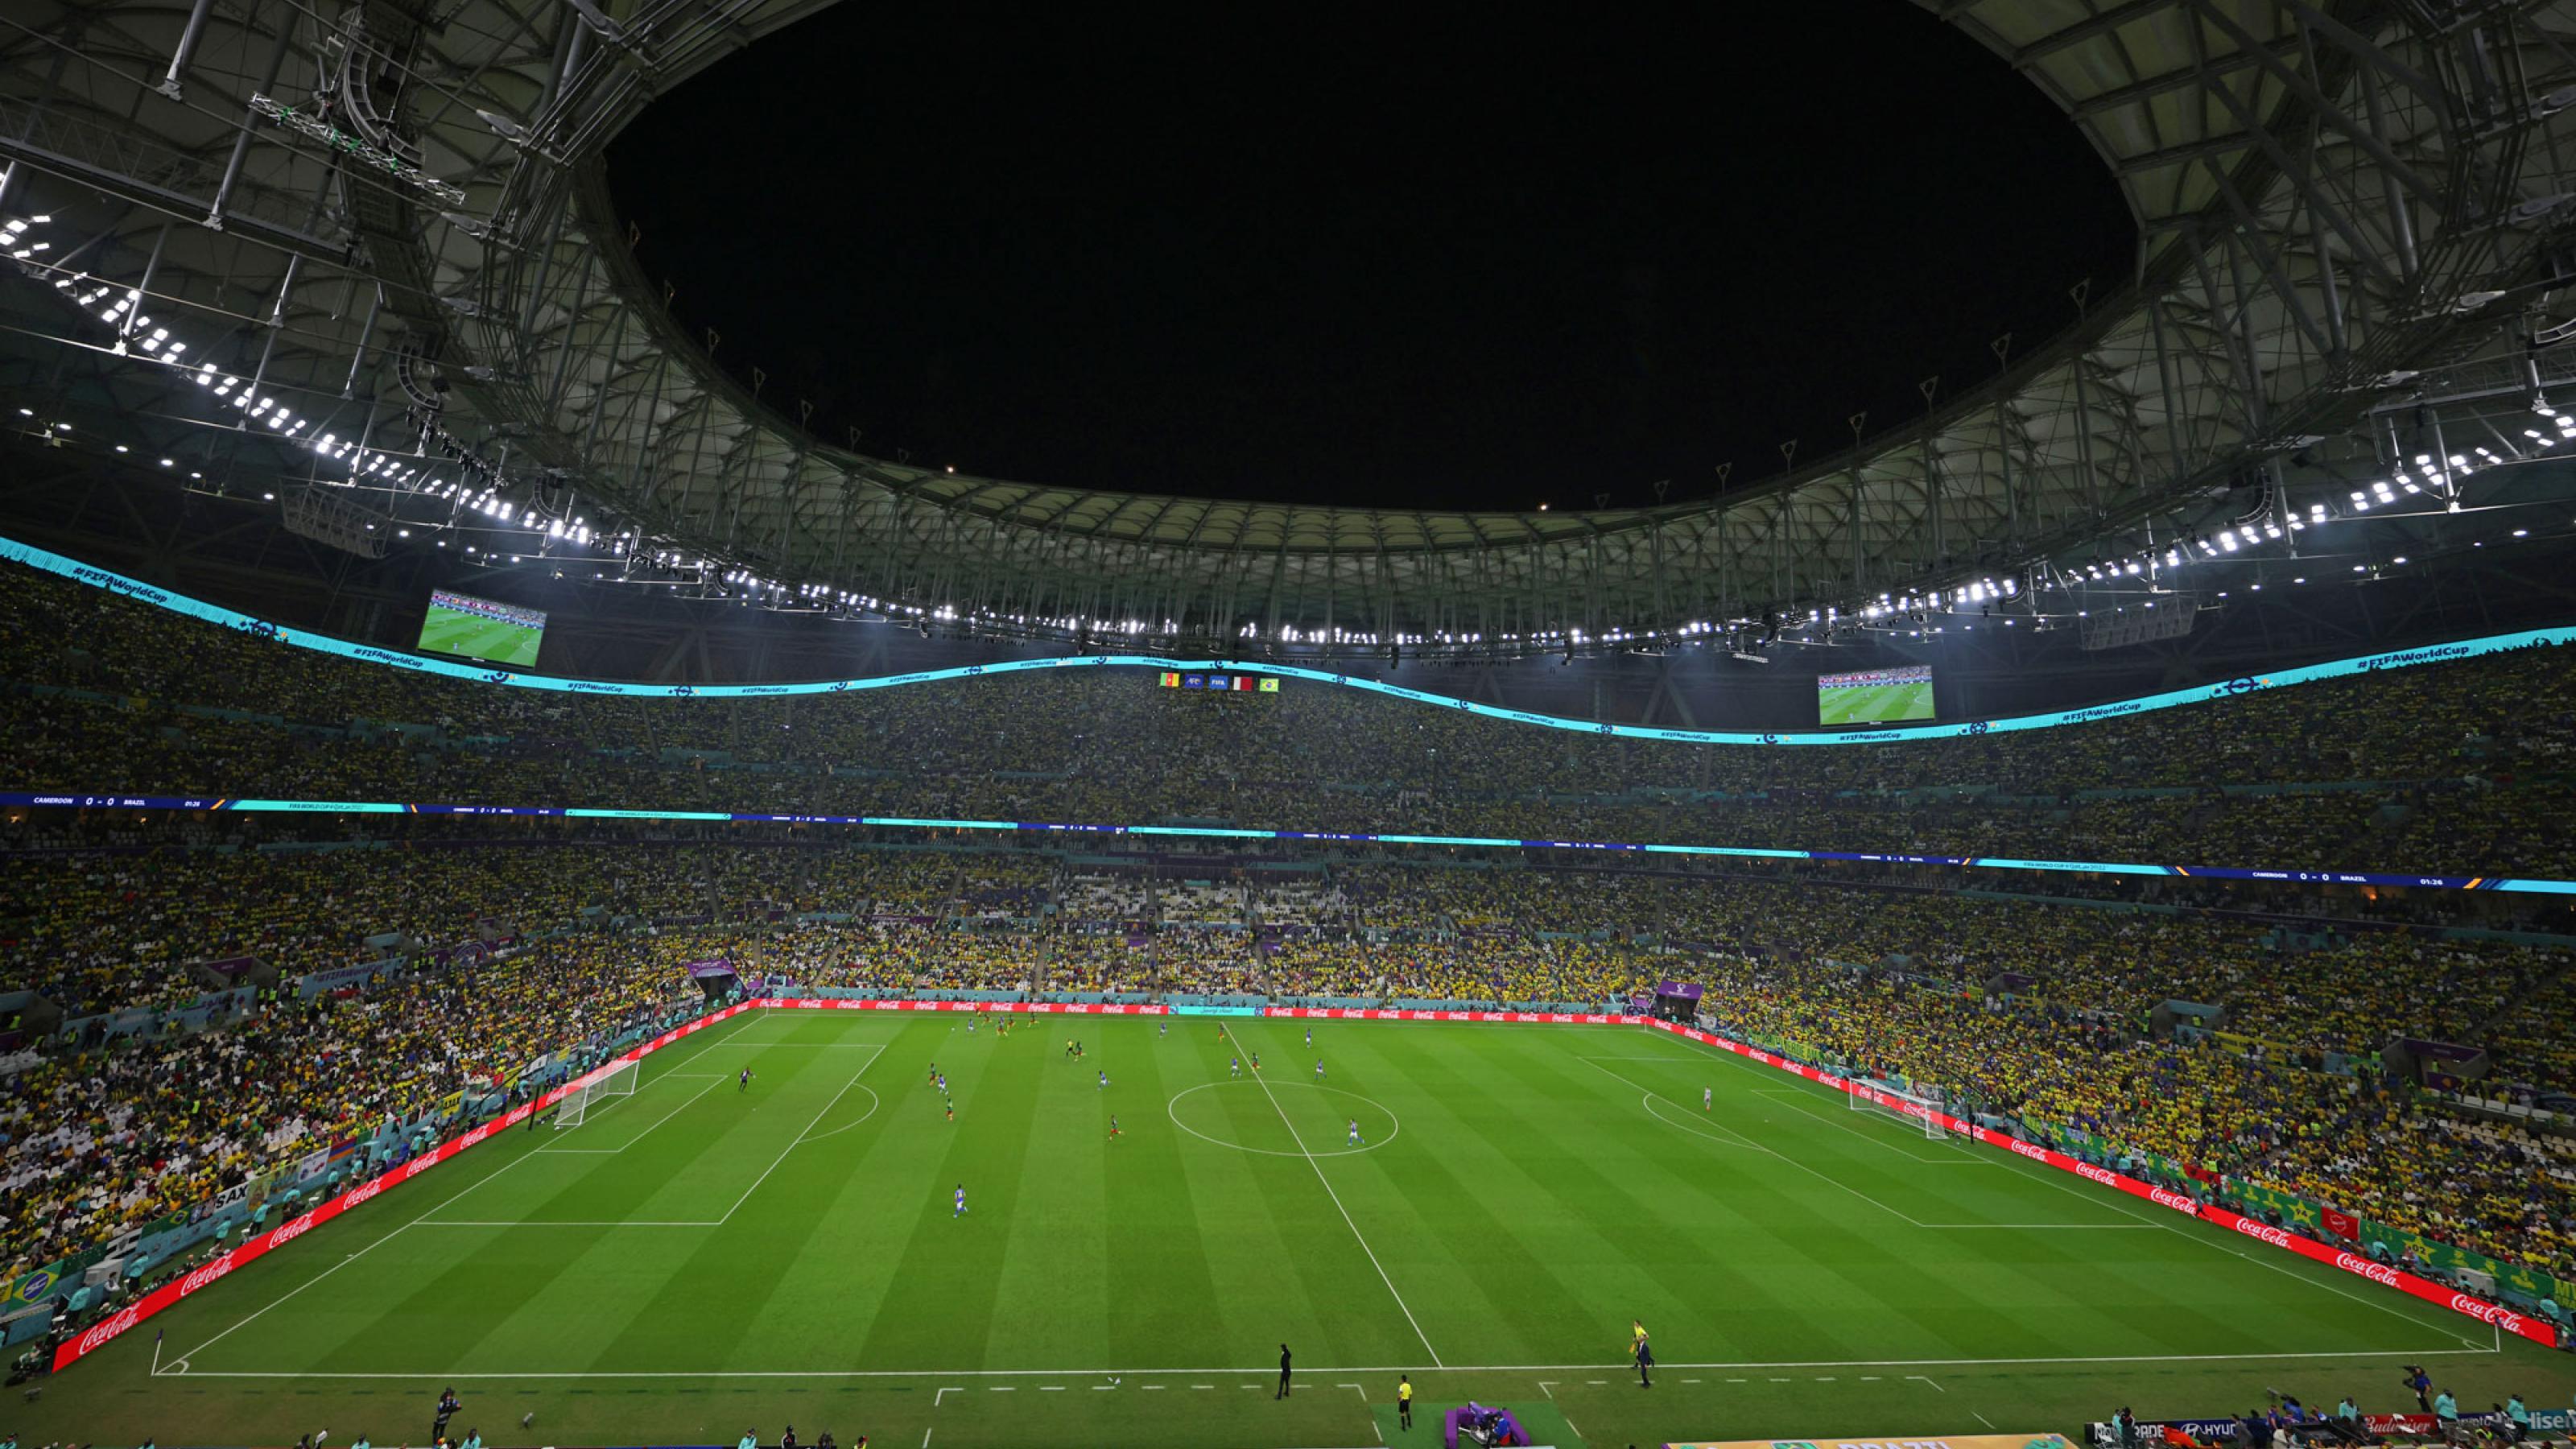 Das moderne Lusail-Stadion in Katar am Abend. Die Stadionränge sind gefüllt, auf dem Rasen sind Spieler zu erkennen.